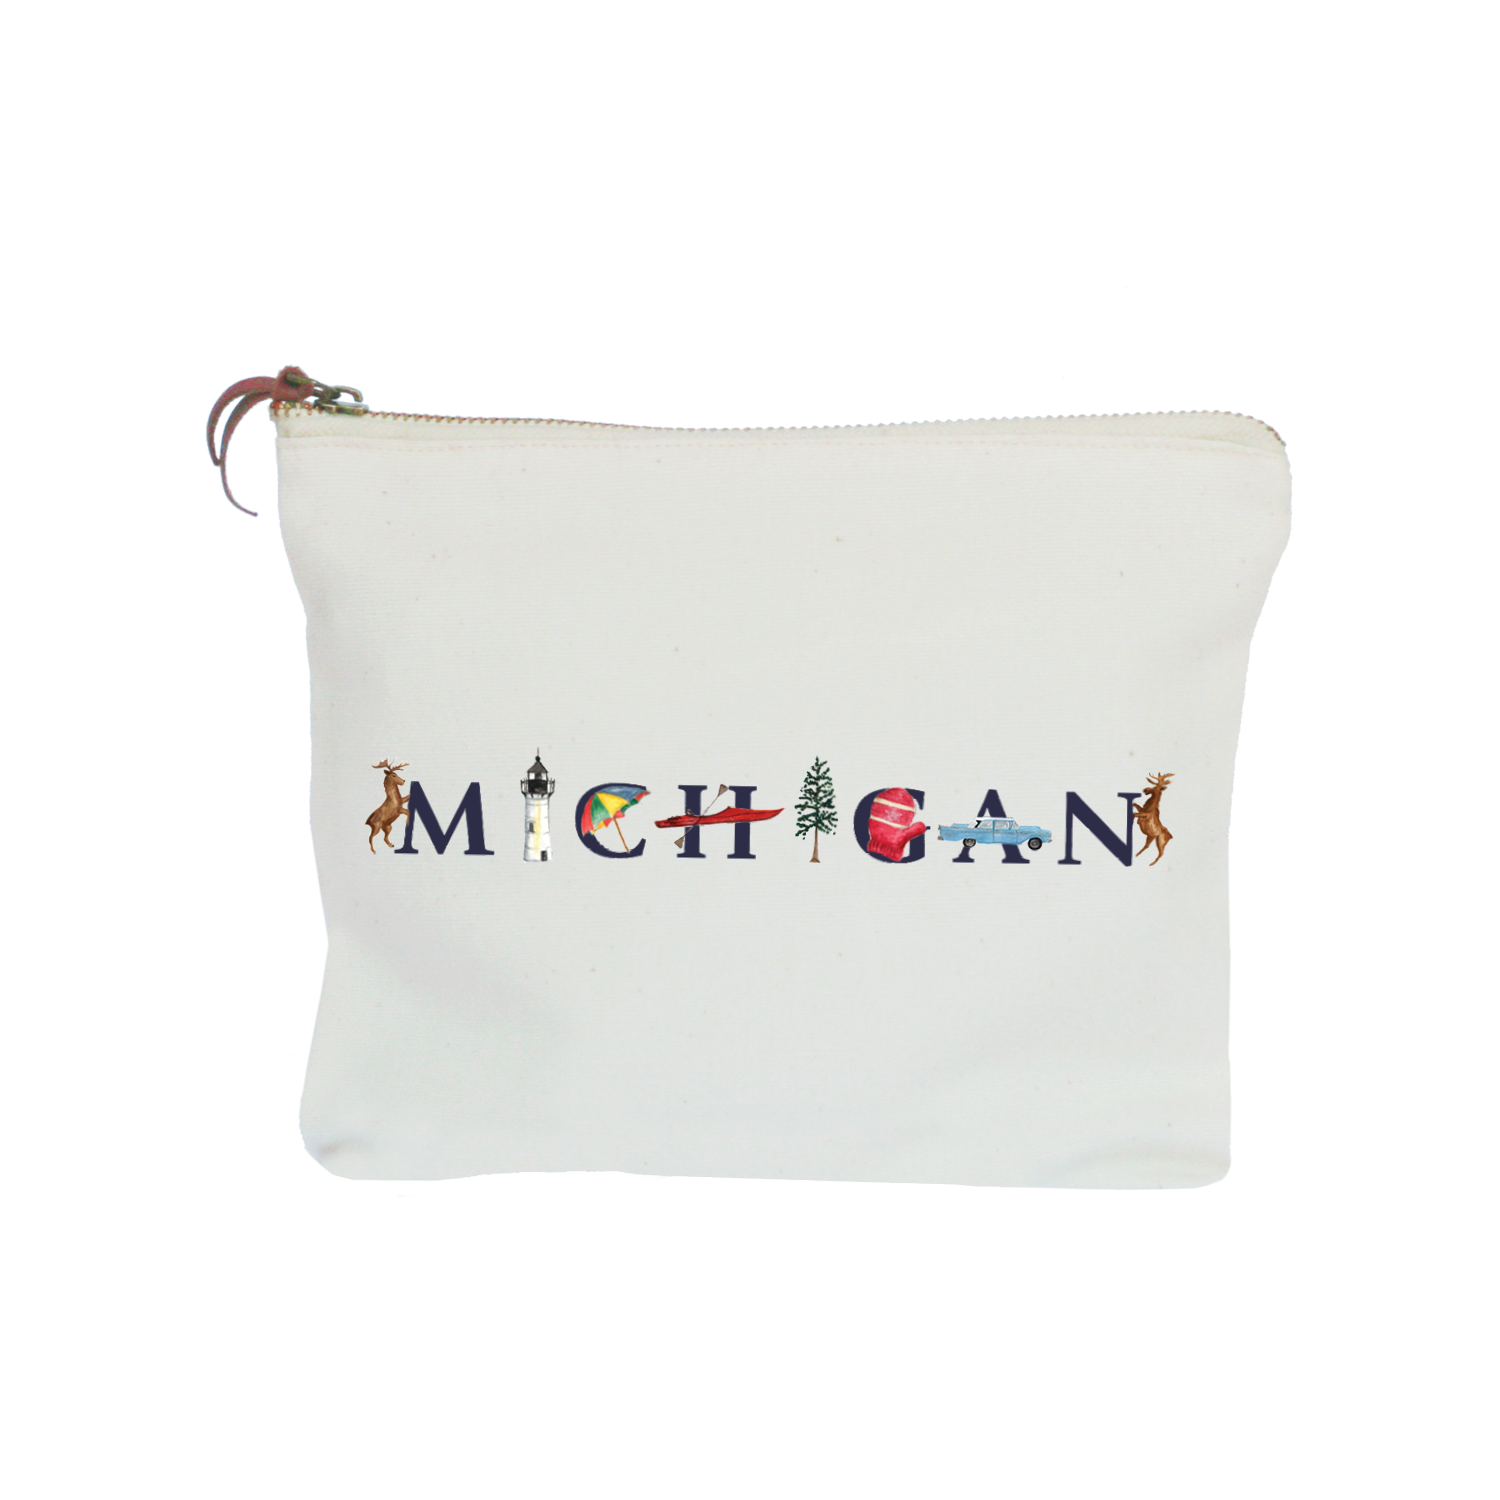 Michigan zipper pouch